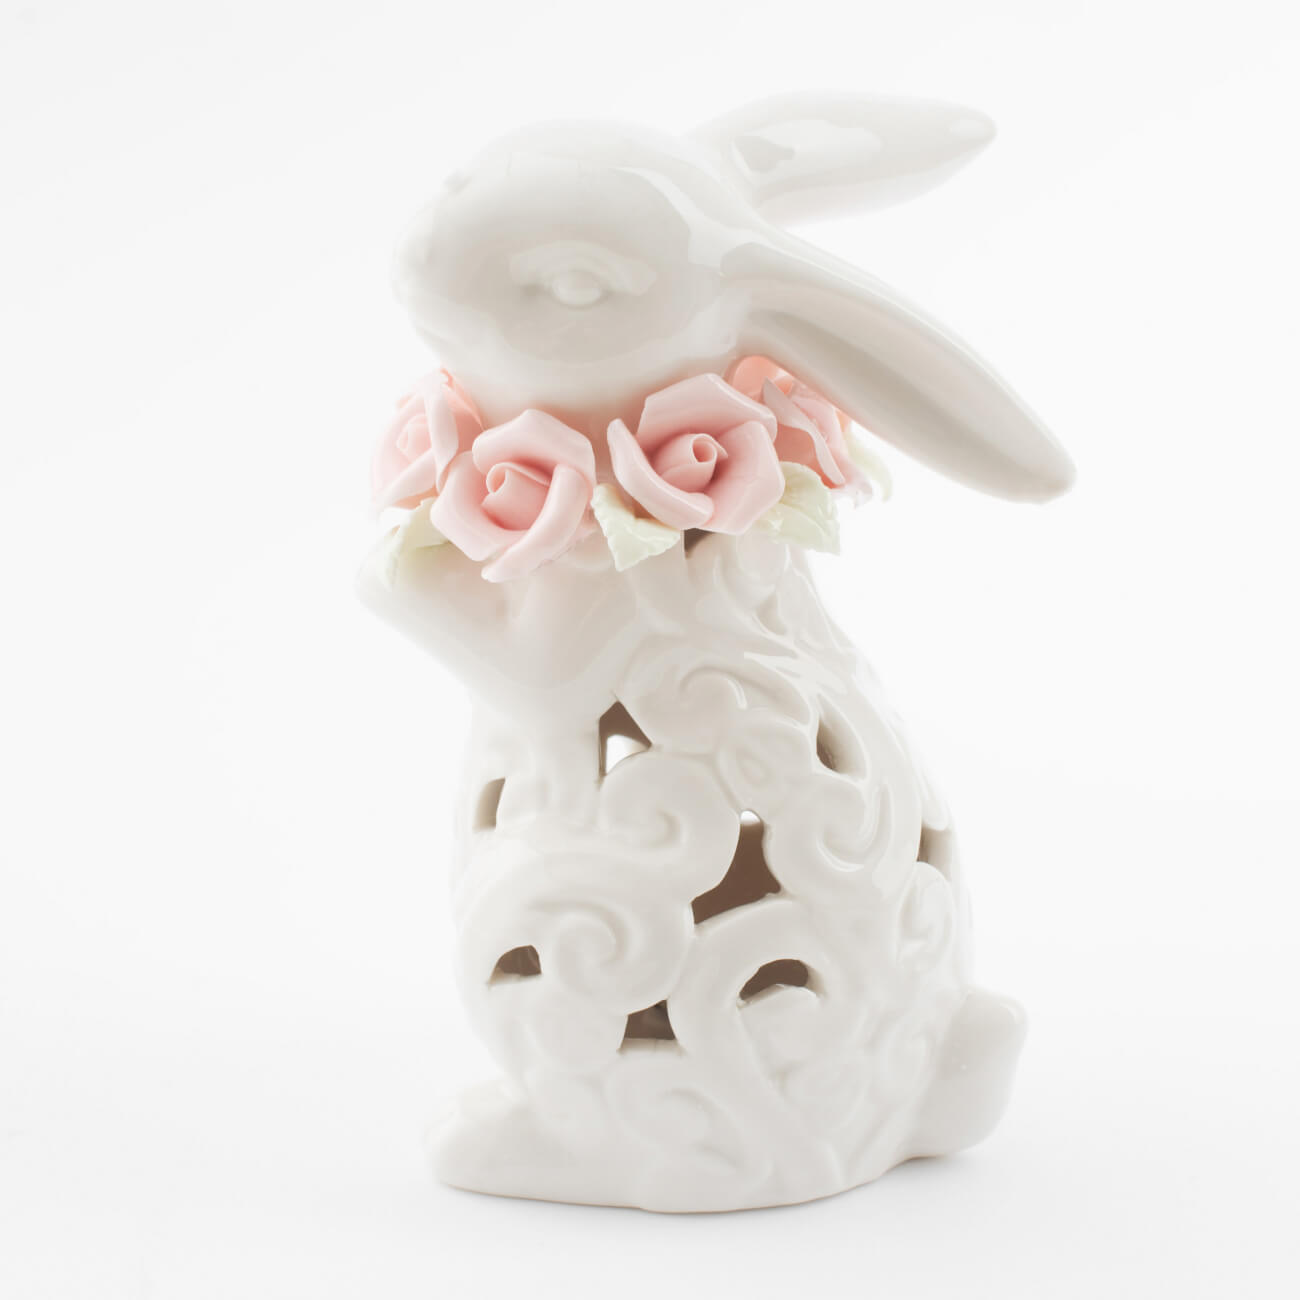 Статуэтка с подсветкой, 13 см, фарфор P, белая, Кролик с цветами, Easter статуэтка 14 см фарфор p бежевая кролик сидит natural easter